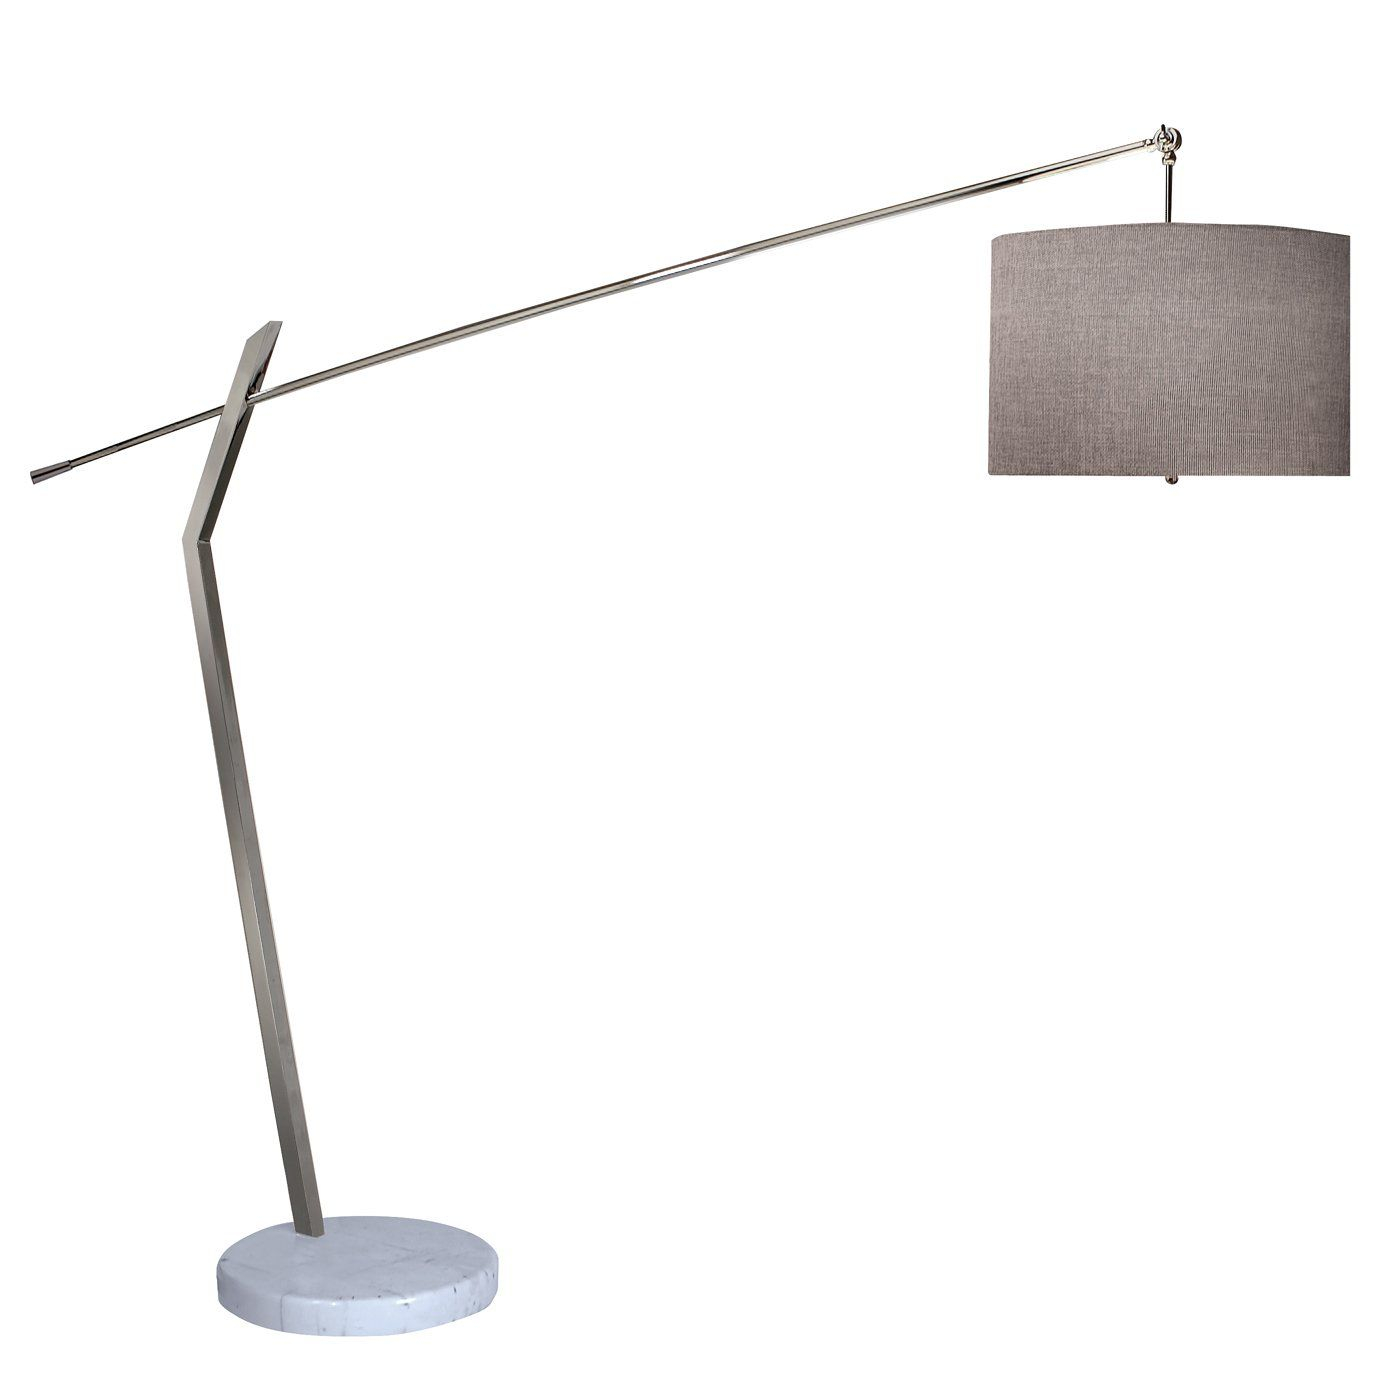 Trend Lighting Tfa990 2 Light Chelsea Arc Floor Lamp For intended for sizing 1400 X 1400